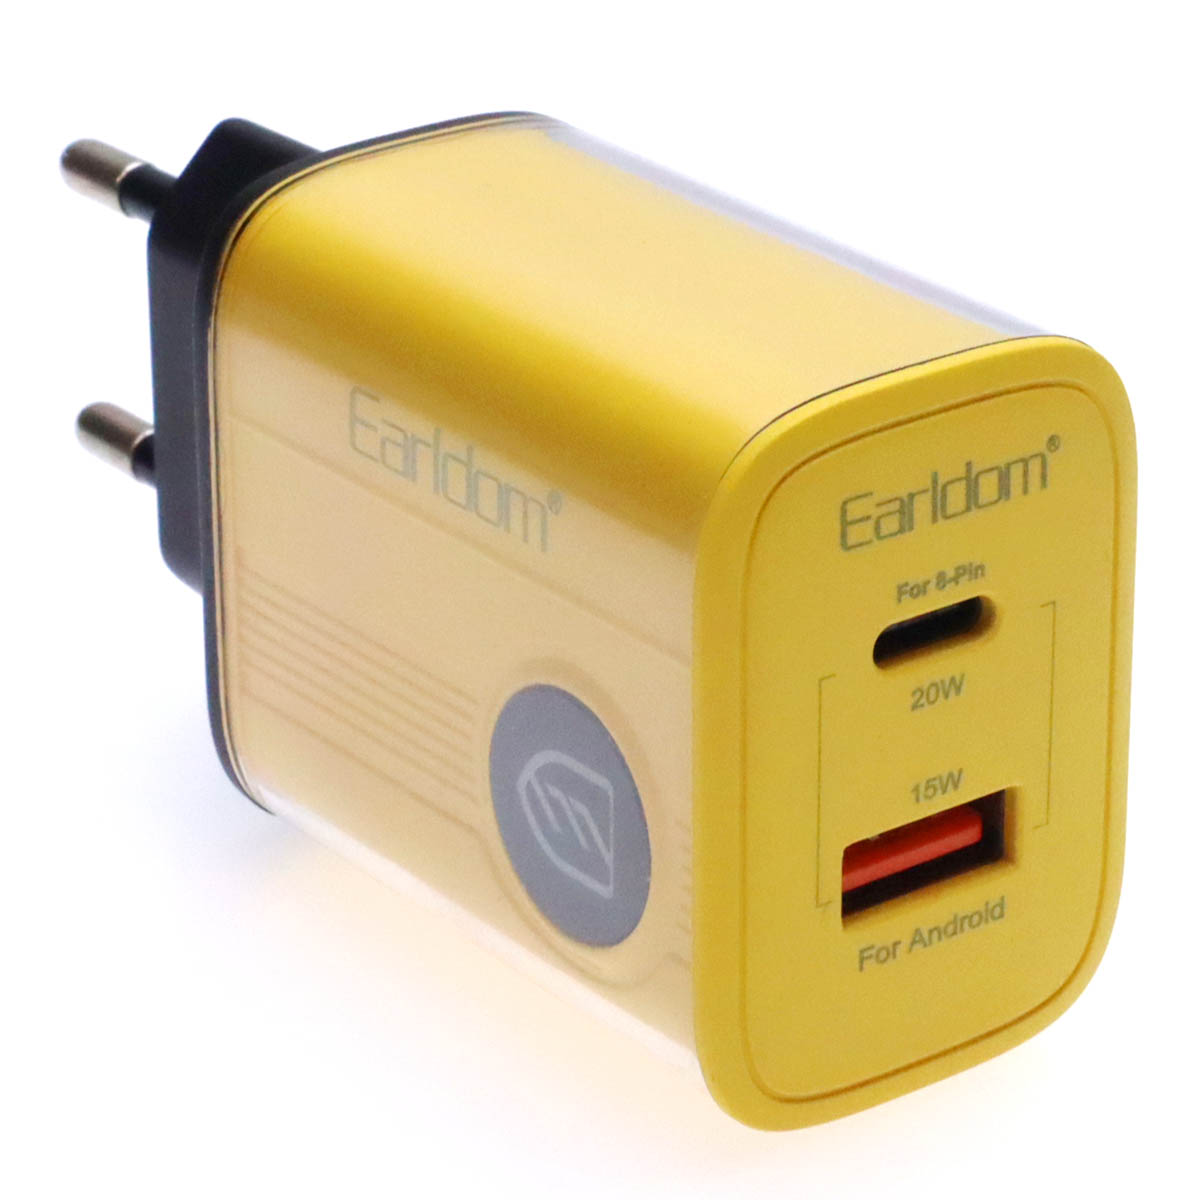 СЗУ (Сетевое зарядное устройство) EARLDOM ES-EU40 с кабелем USB Type C на USB Type C, QC3.0 15W, PD20 20W, длина 1 метр, цвет желтый